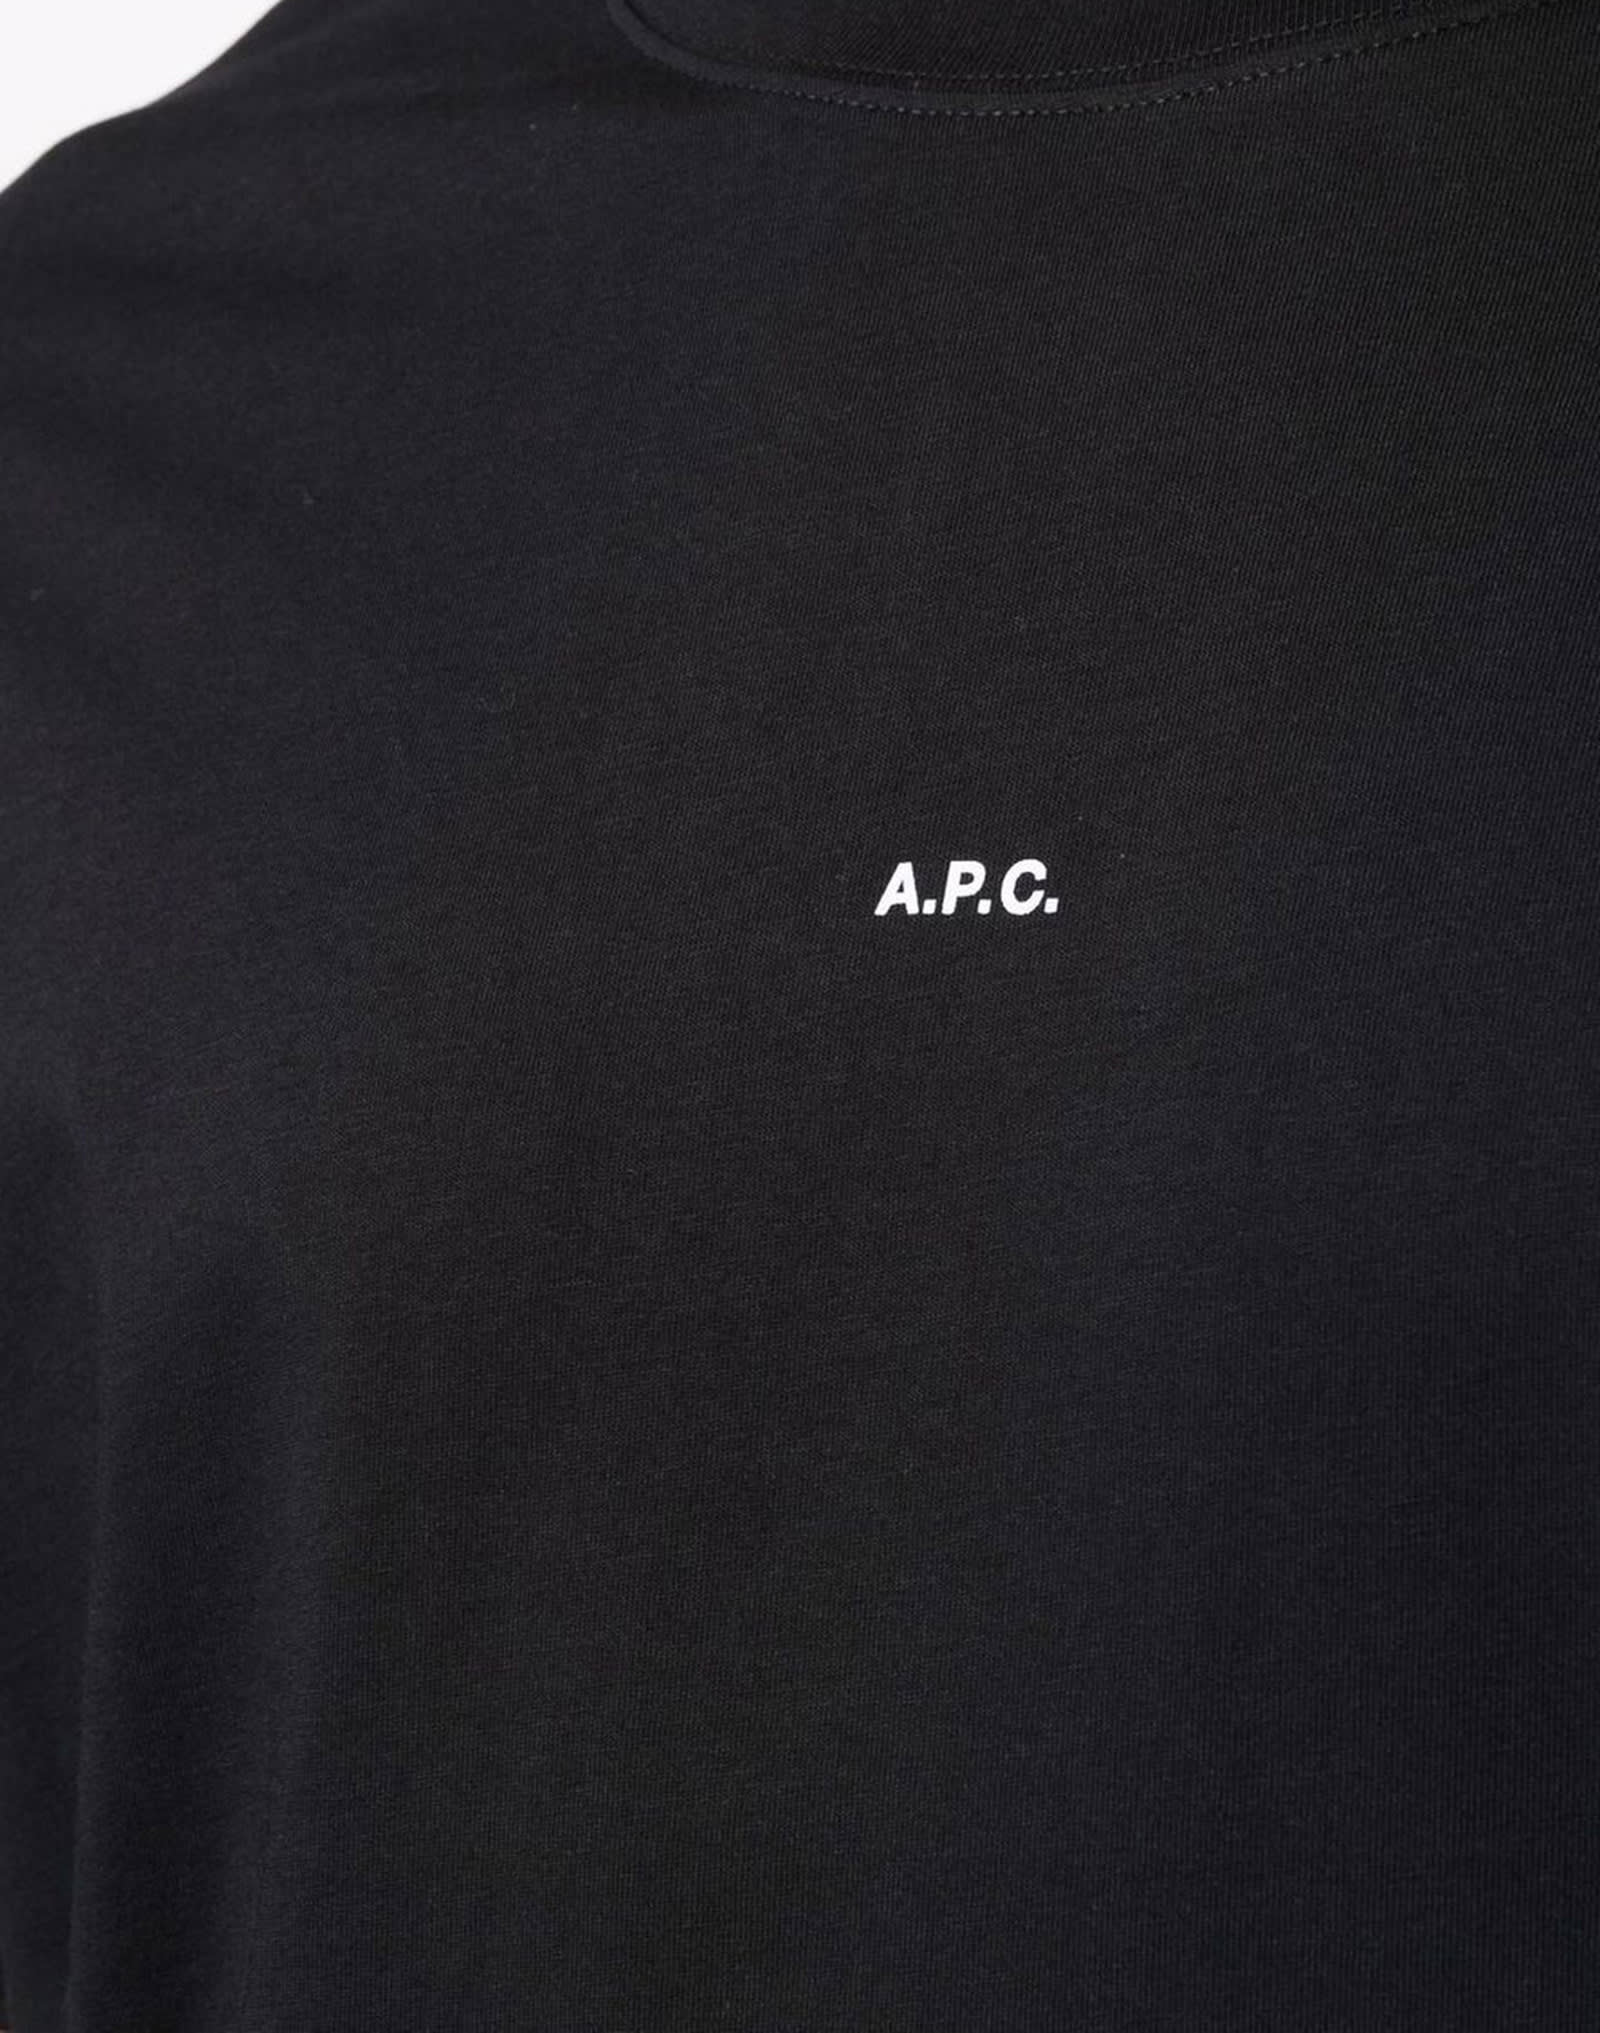 Shop Apc Black Cotton T-shirt In Lzz Black